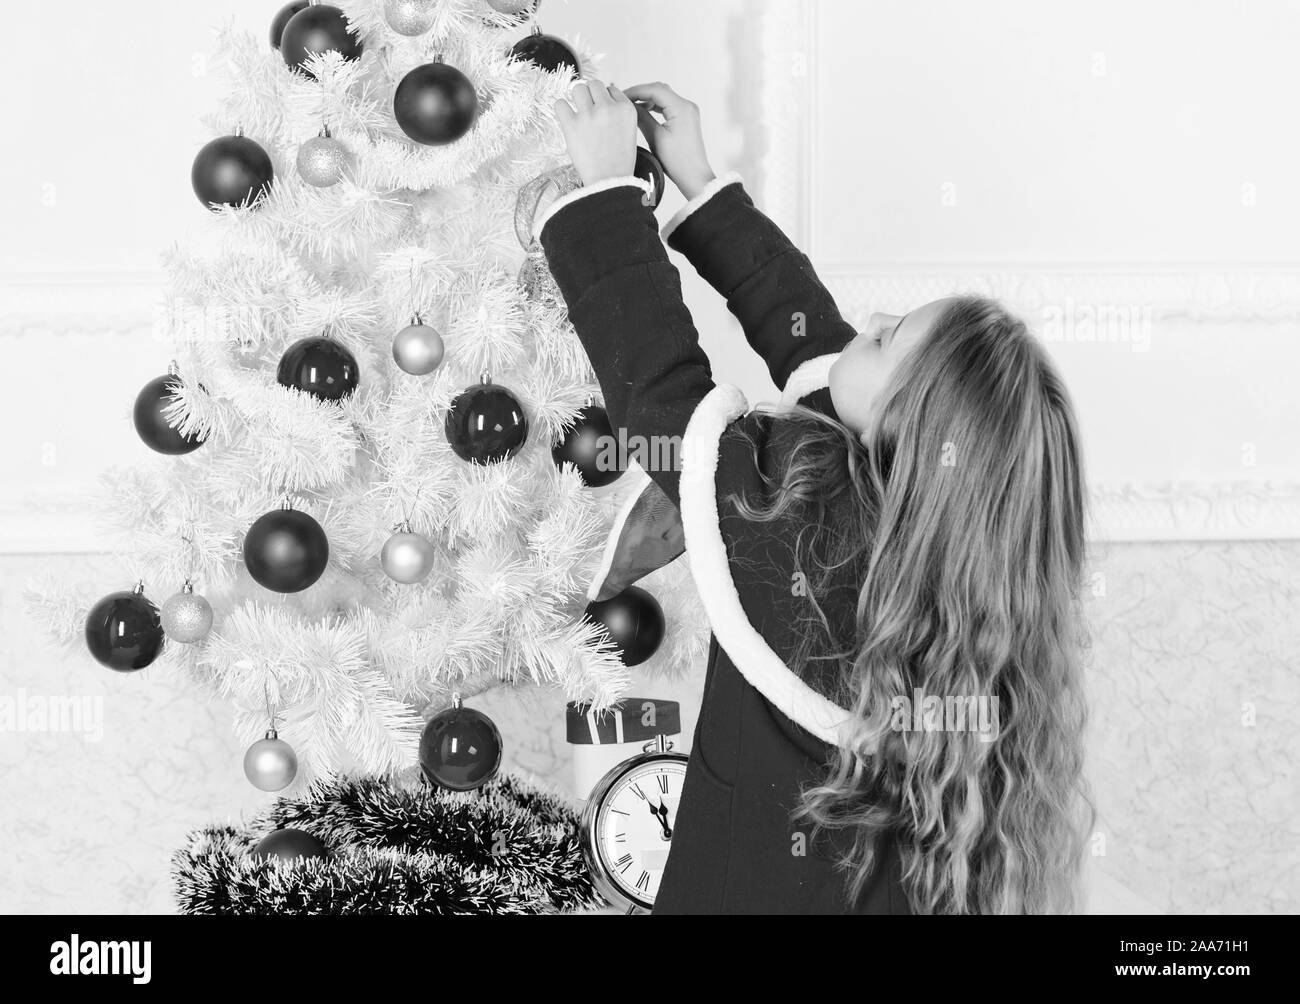 Cómo decorar el árbol de navidad con el Kid. Vamos kid decorar árbol de  navidad. Parte favorita de decorar. Obtención de niño involucrado  decorando. Chica pelo largo sujetar las bolas adornos de